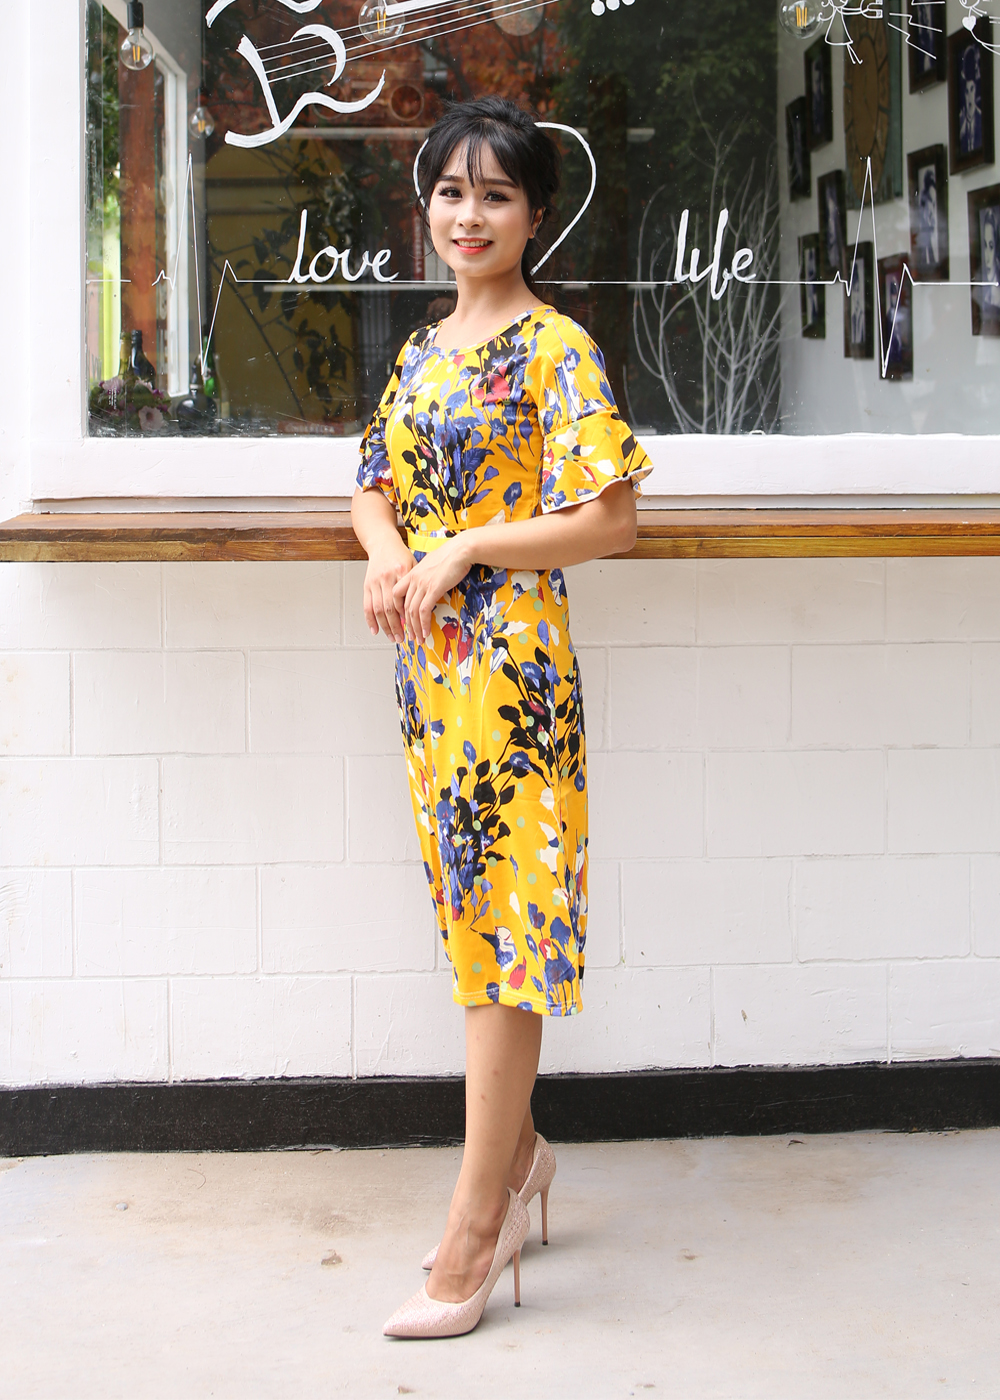 Váy Hoa Vàng Tiểu Thư Cổ Tròn Ôm Eo New4all VH3060 - Freesize Cho người dưới 50Kg